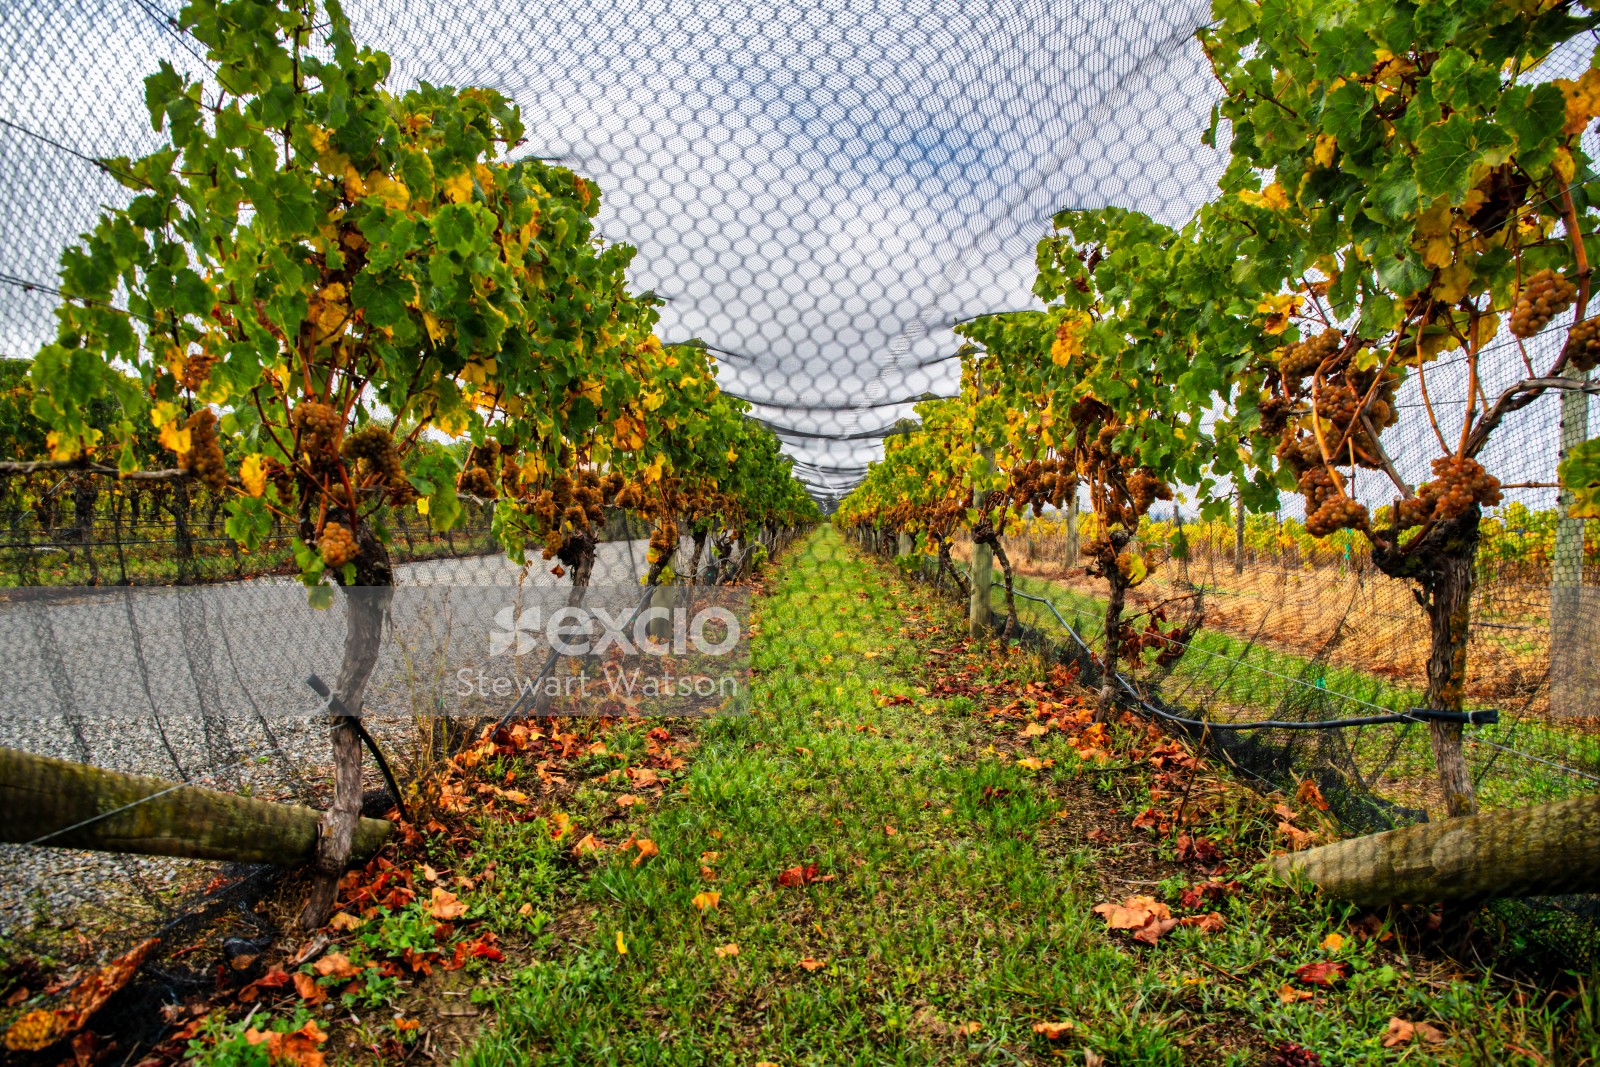 Vineyard netting